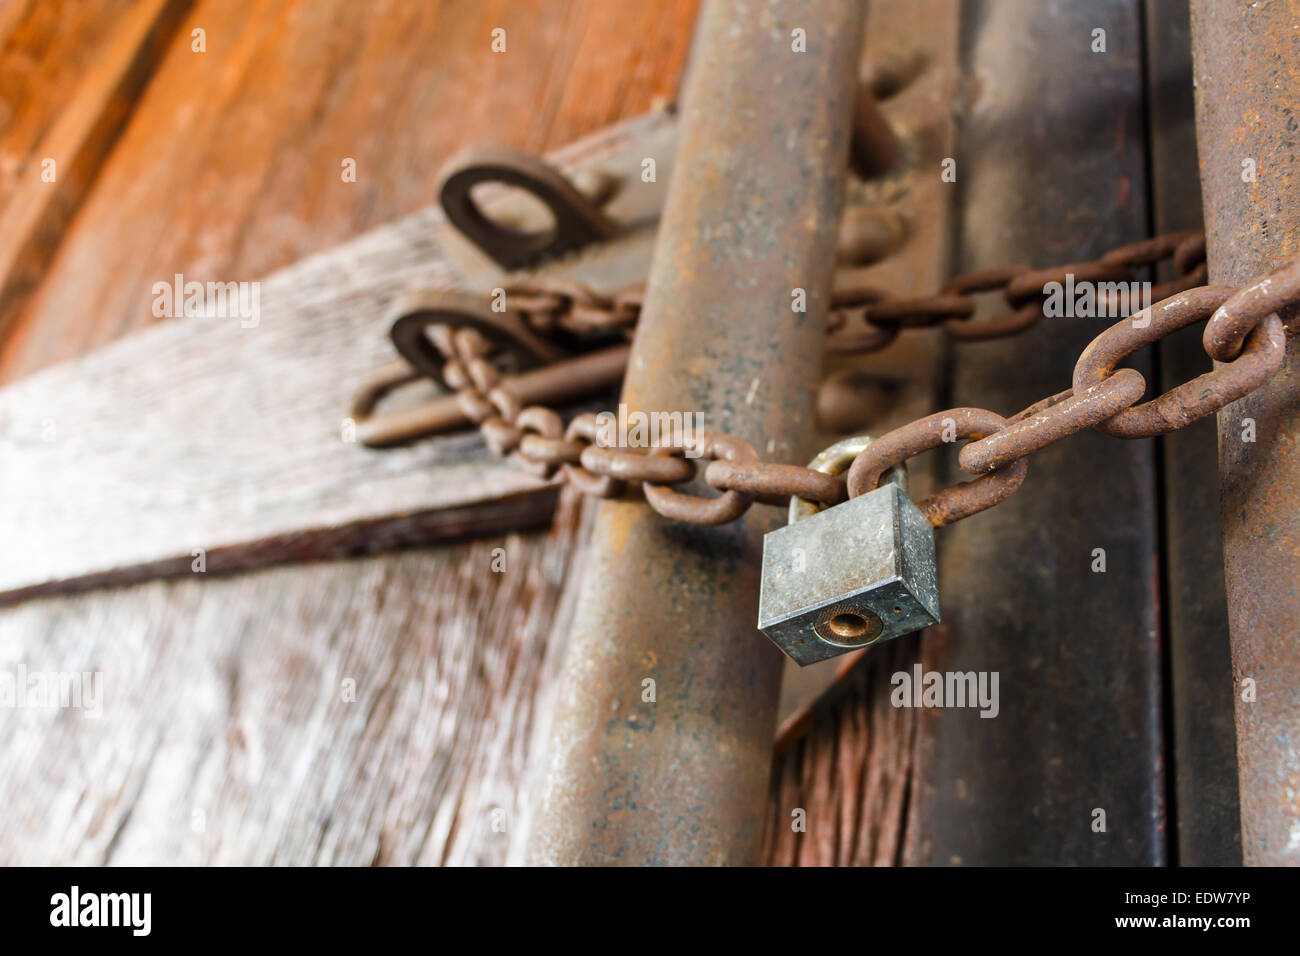 Cadena oxidada y master key lock puerta de madera Foto de stock